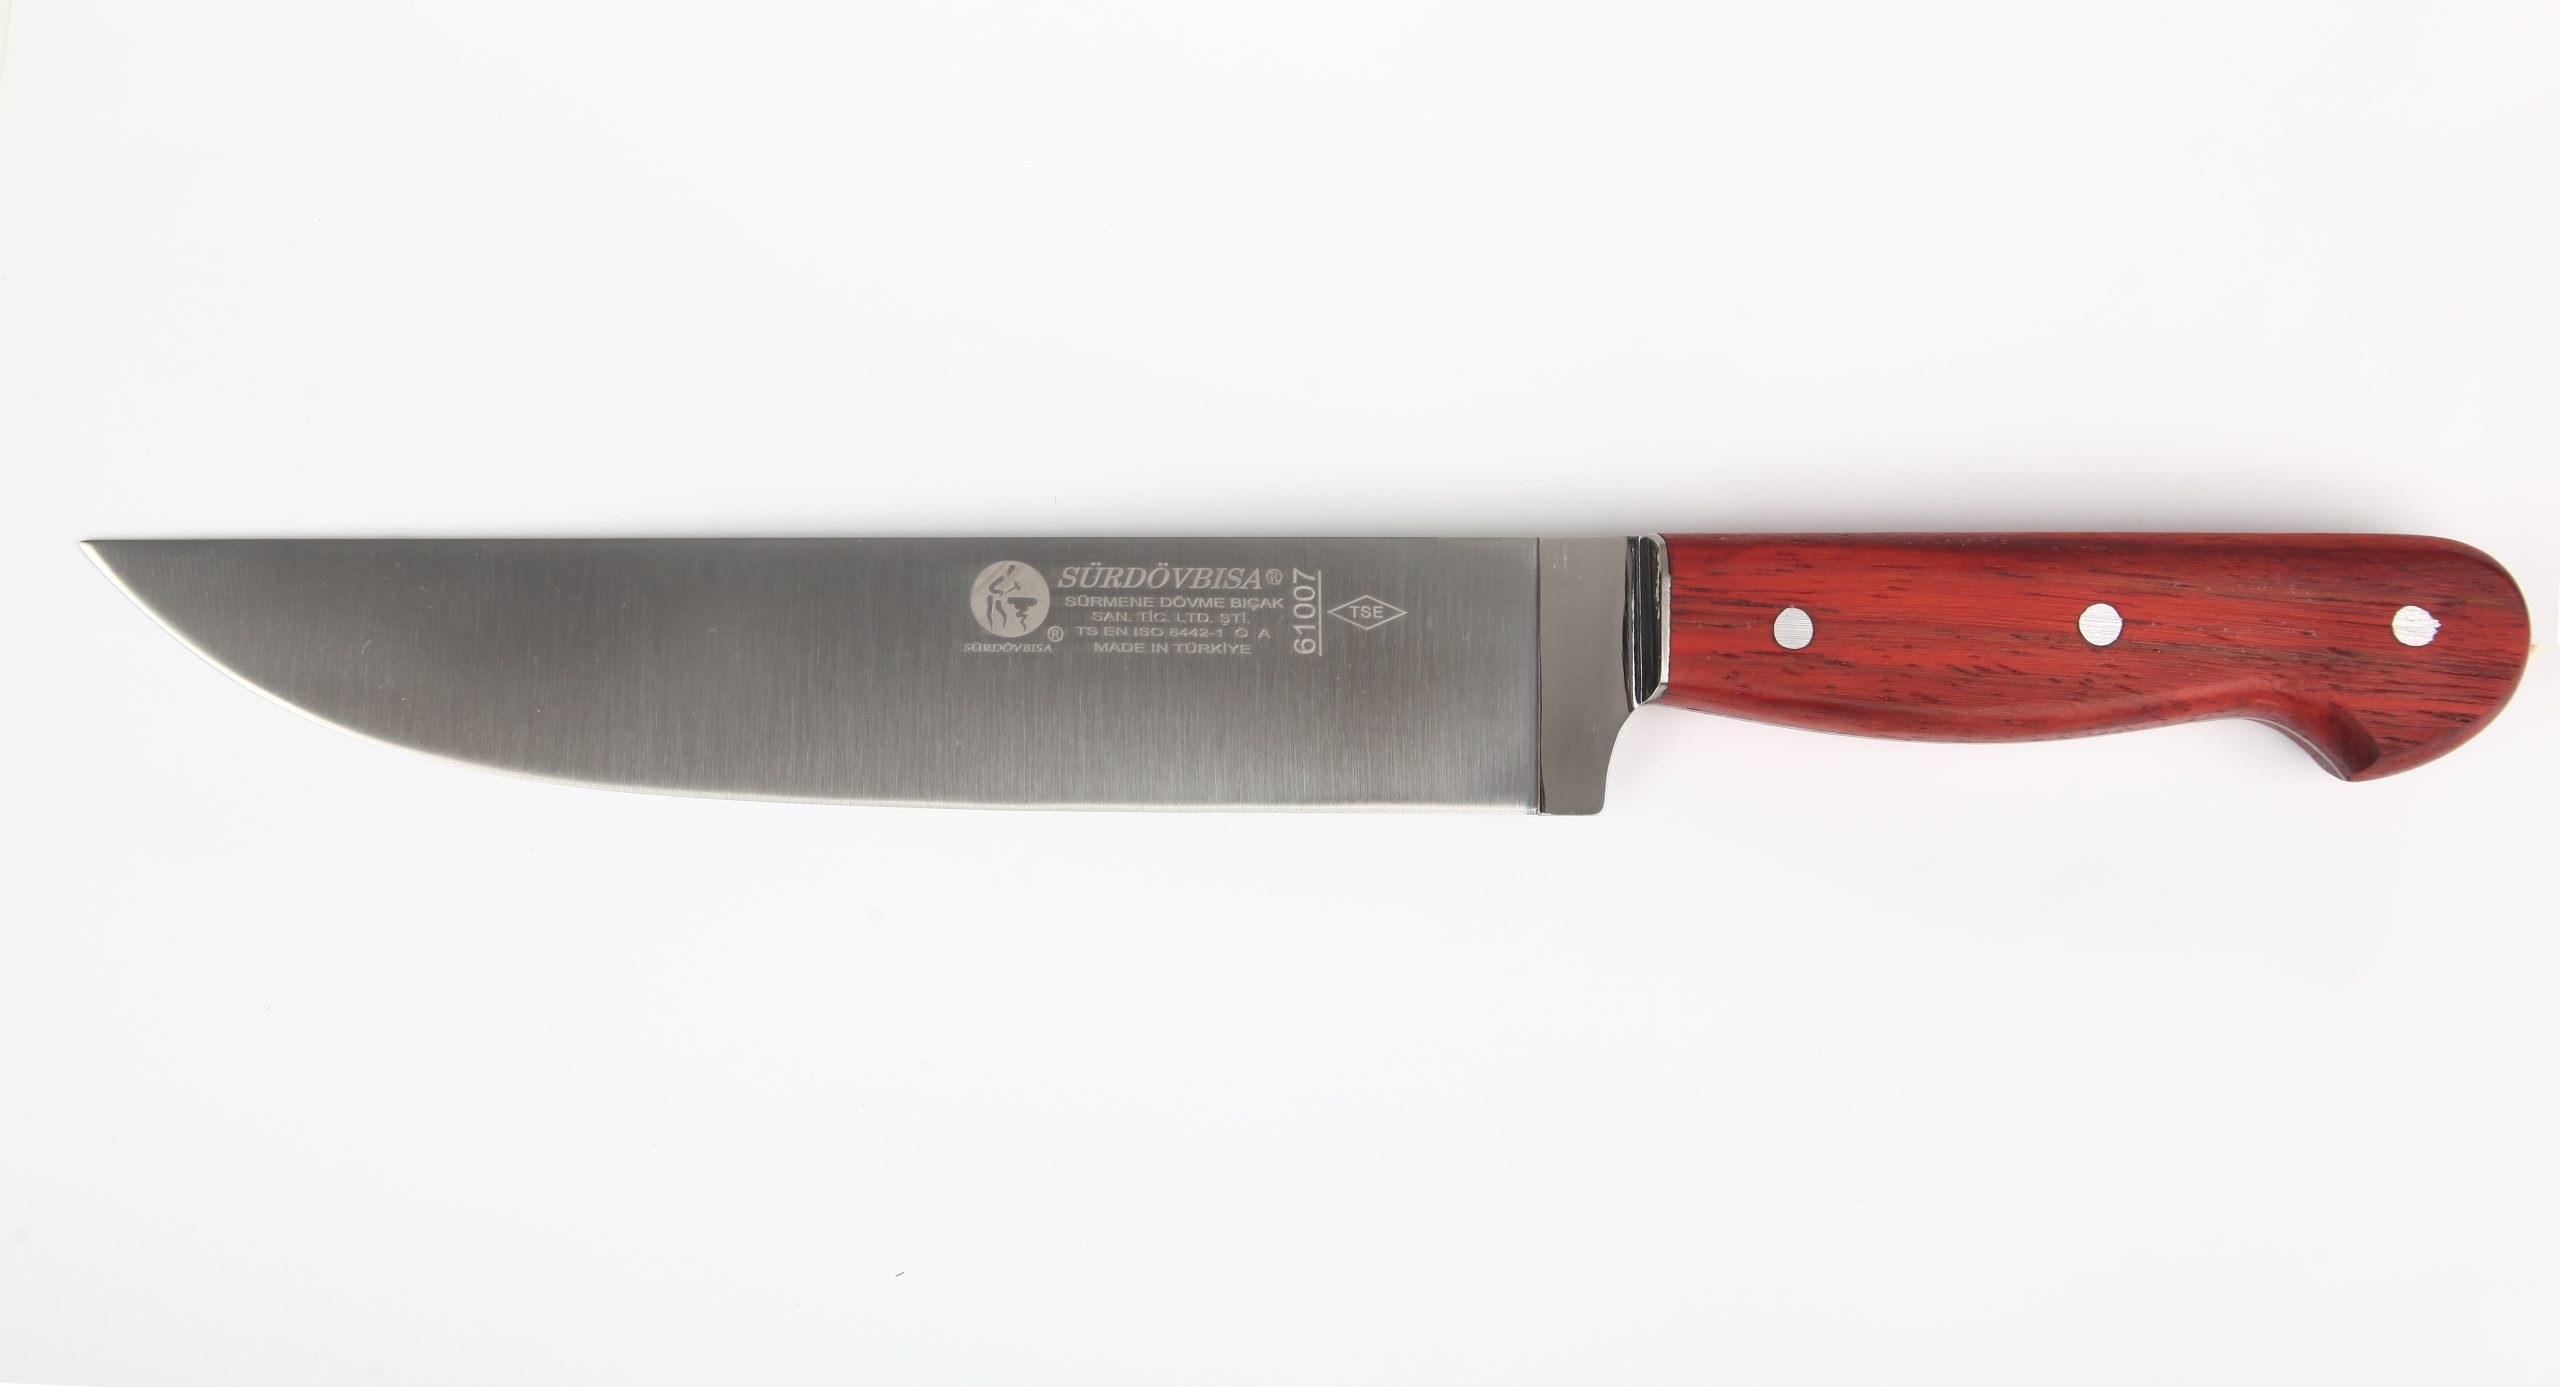 E61007 SÜRDÖVBISA Ahşap Sap Kasap Bıçağı (Kesim Bıçağı)